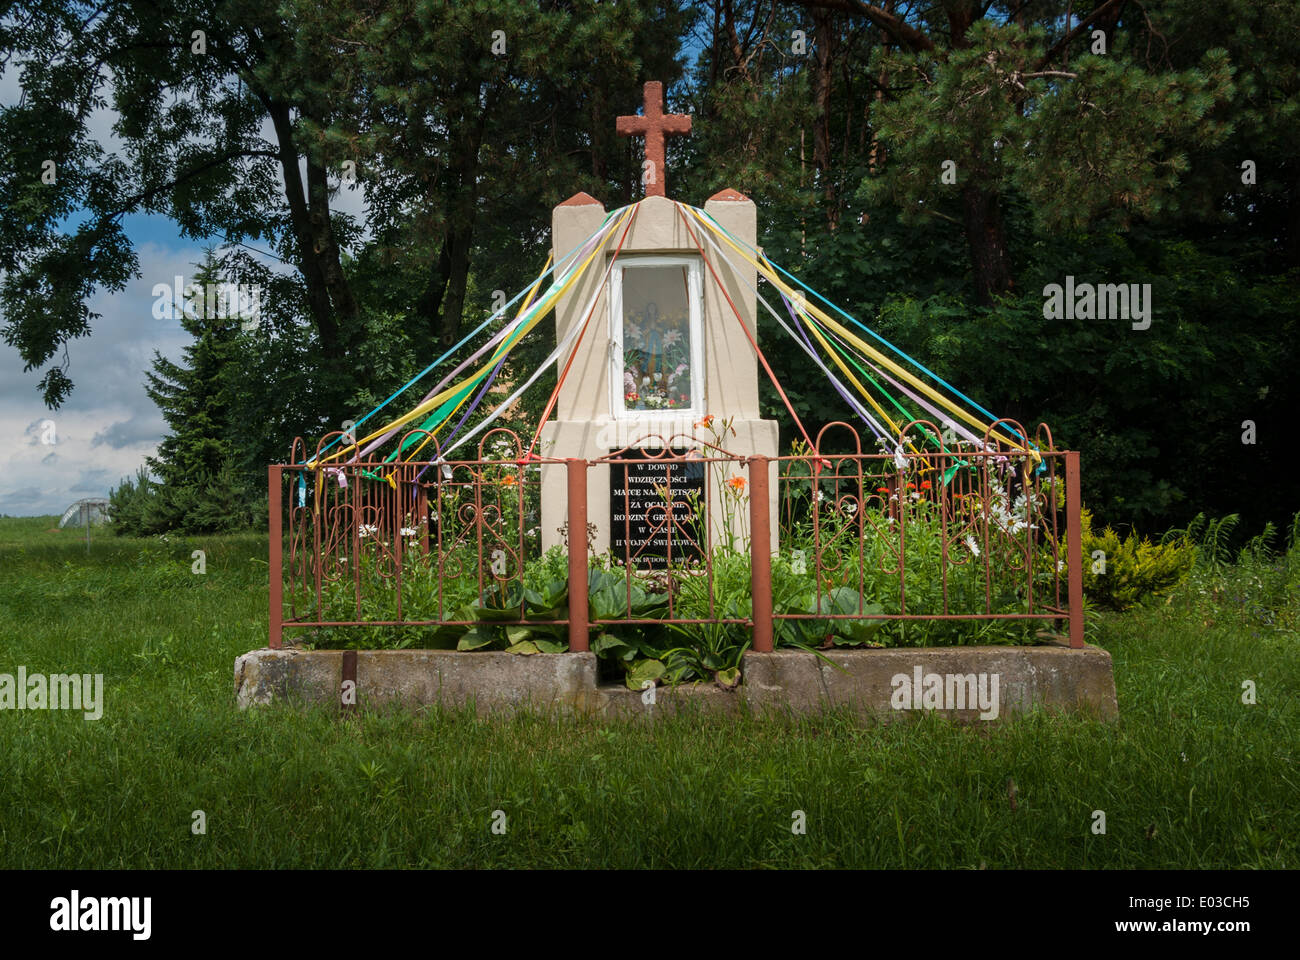 Traditional roadside Roman Catholic Shrine decorated with Ribbons and Flowers, near Sokołów Podlaski, Poland Stock Photo